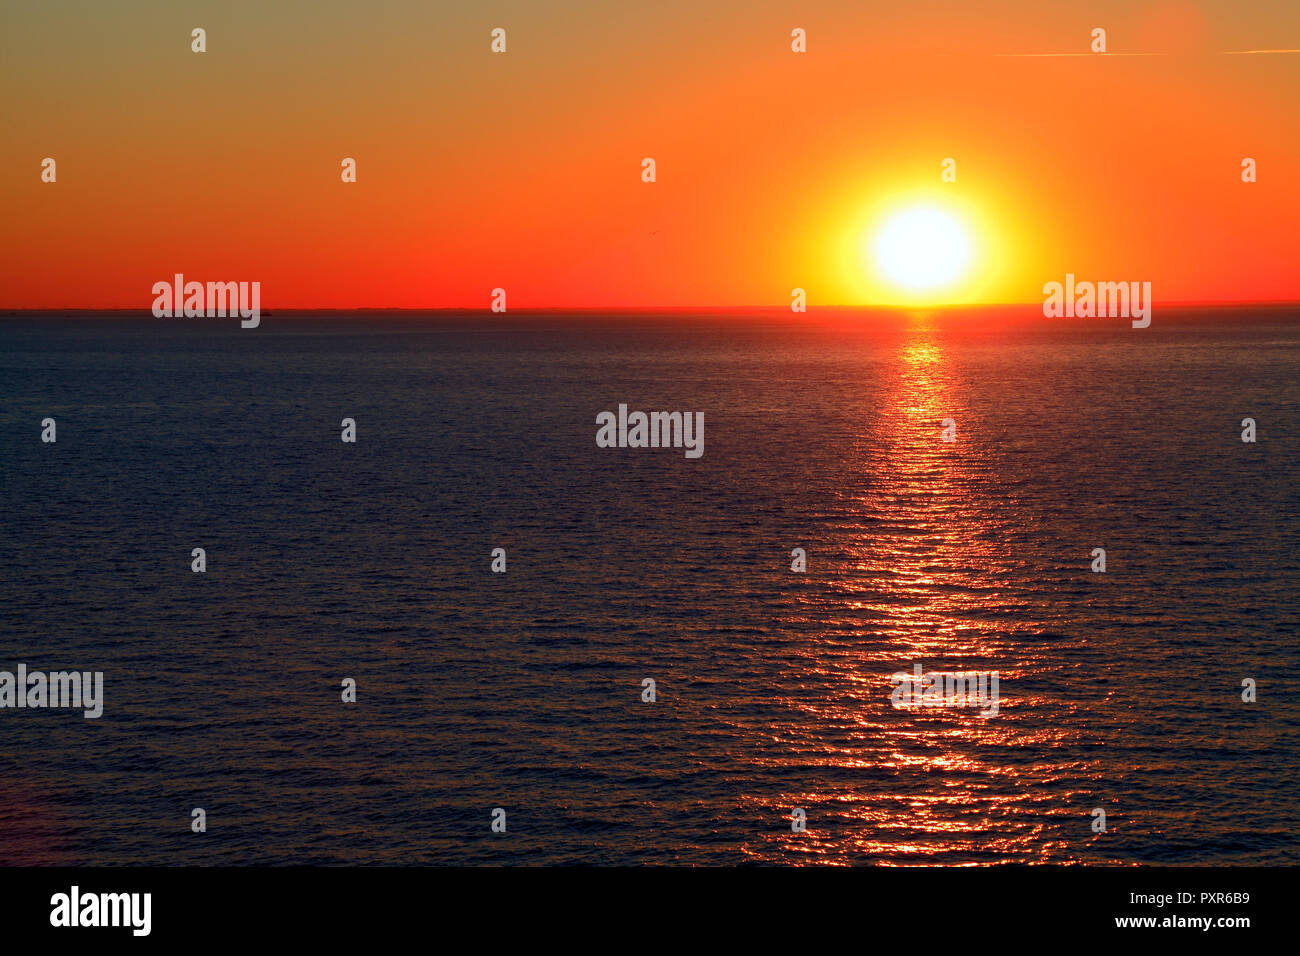 Le coucher du soleil, au-dessus de la mer, ciel rouge, la laver, la côte ouest, Hunstanton, Norfolk, Angleterre, Royaume-Uni Banque D'Images